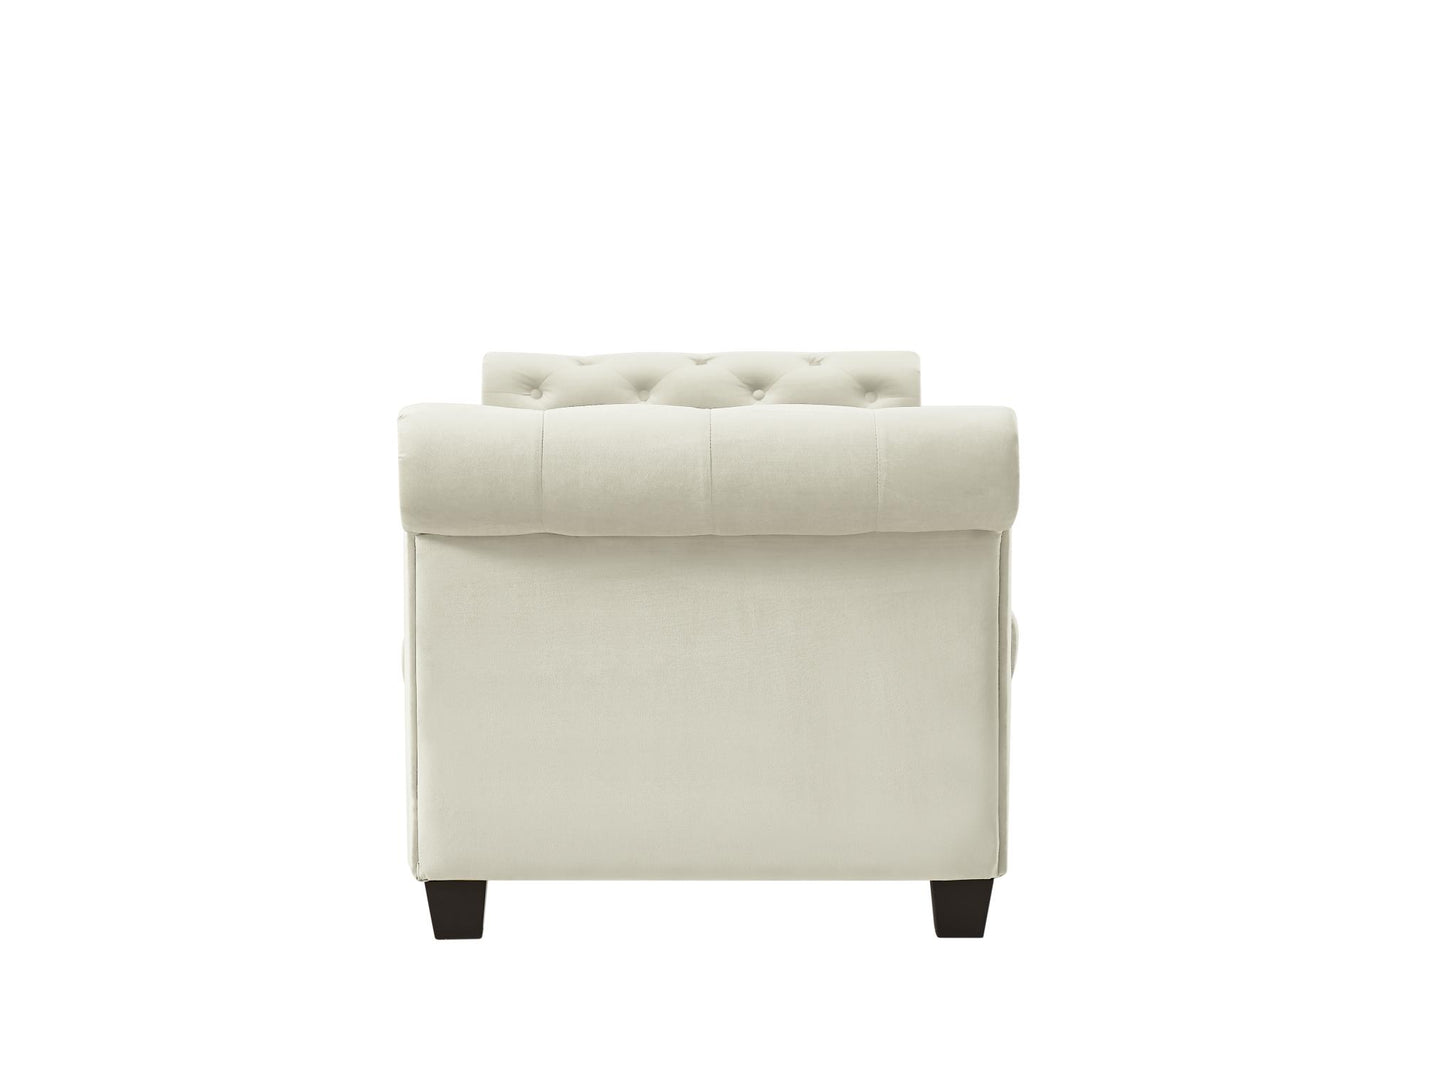 The Mozelle 82.3" Rectangular Large Chaise Lounge Ivory